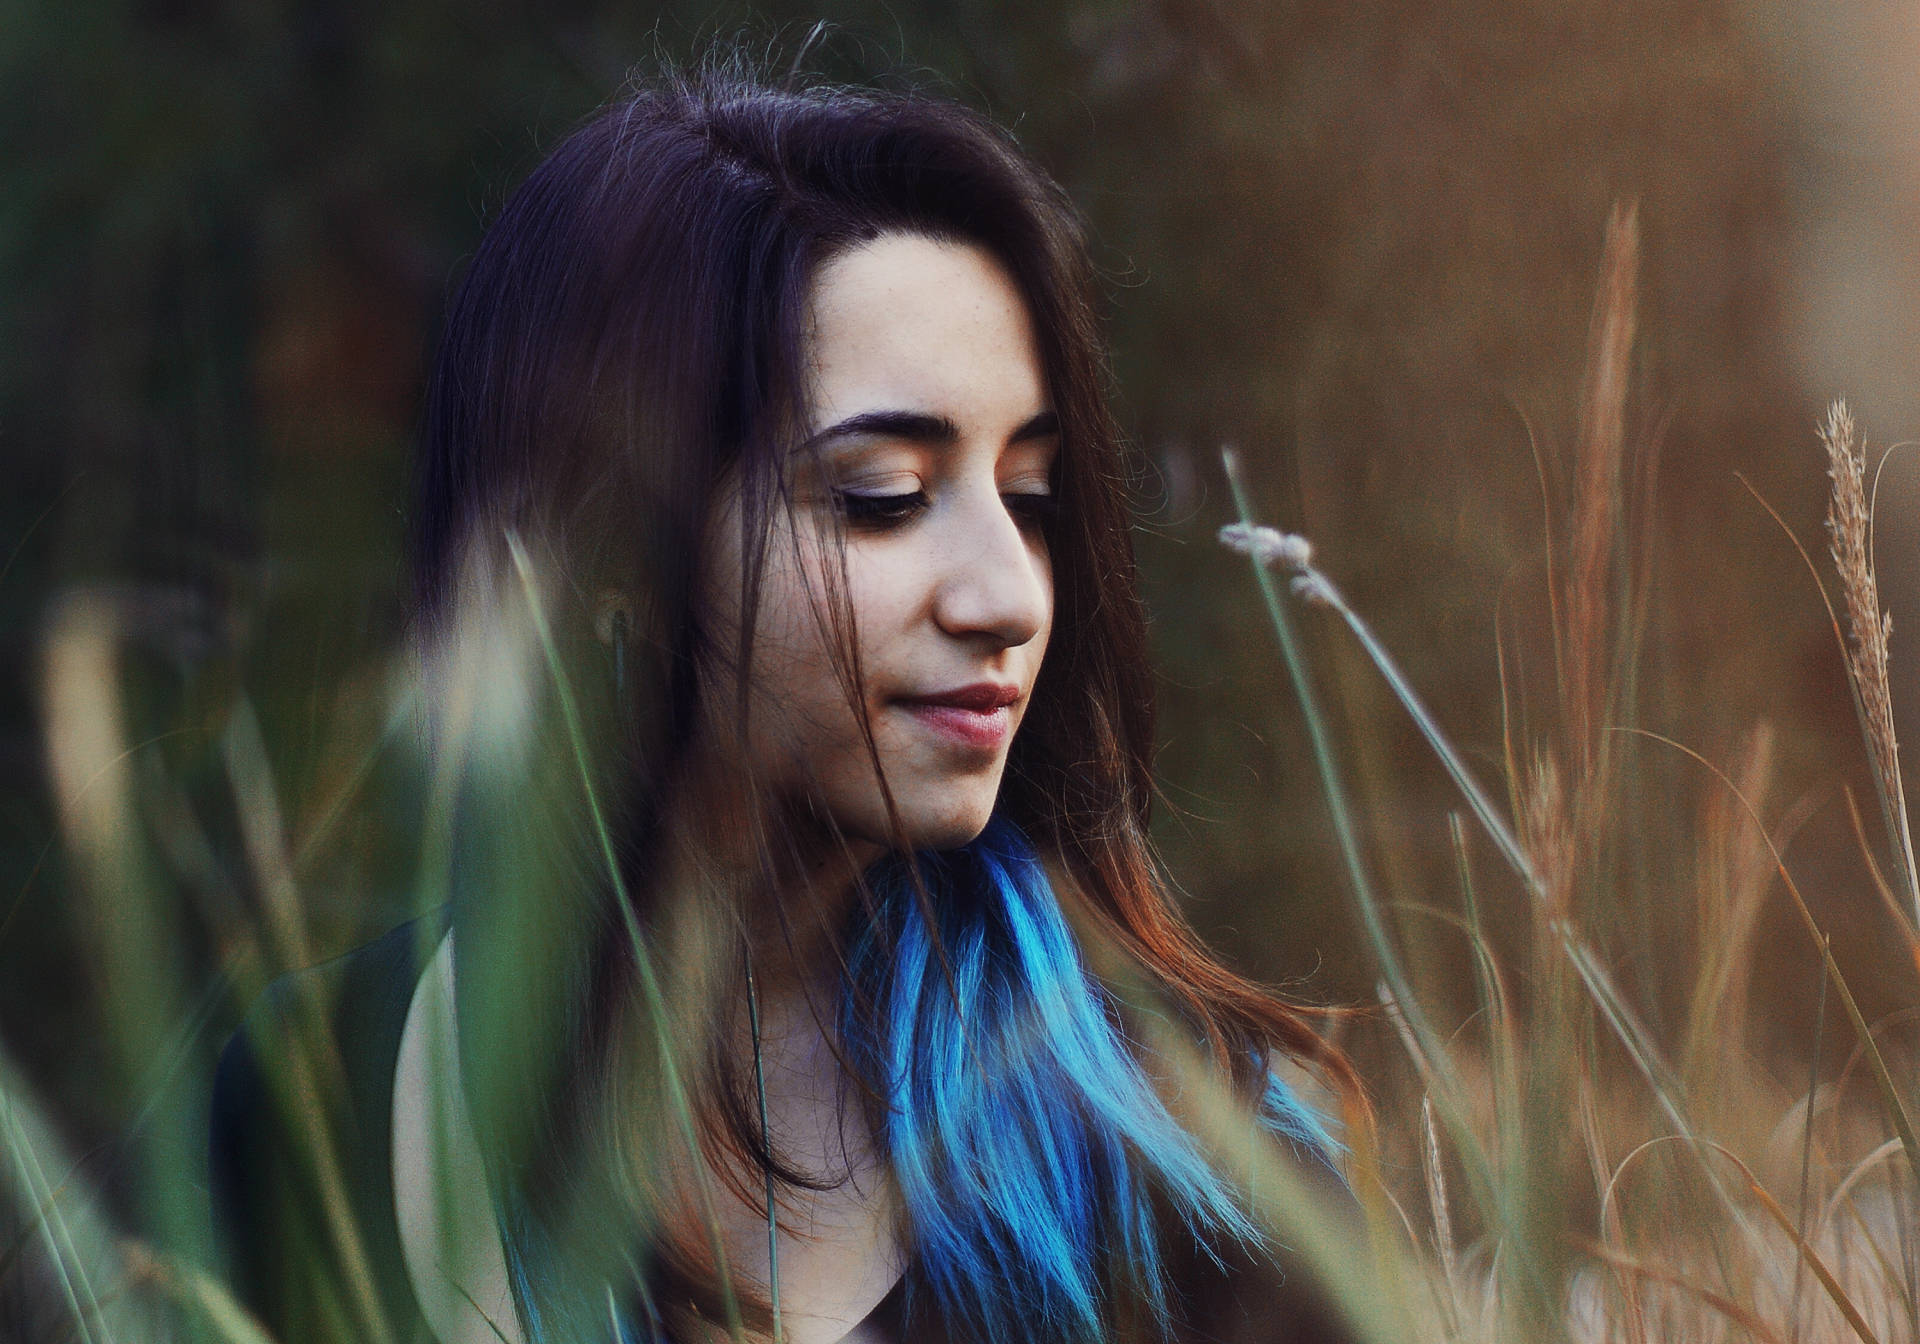 Italian Girl With Blue Hair Streak Wallpaper